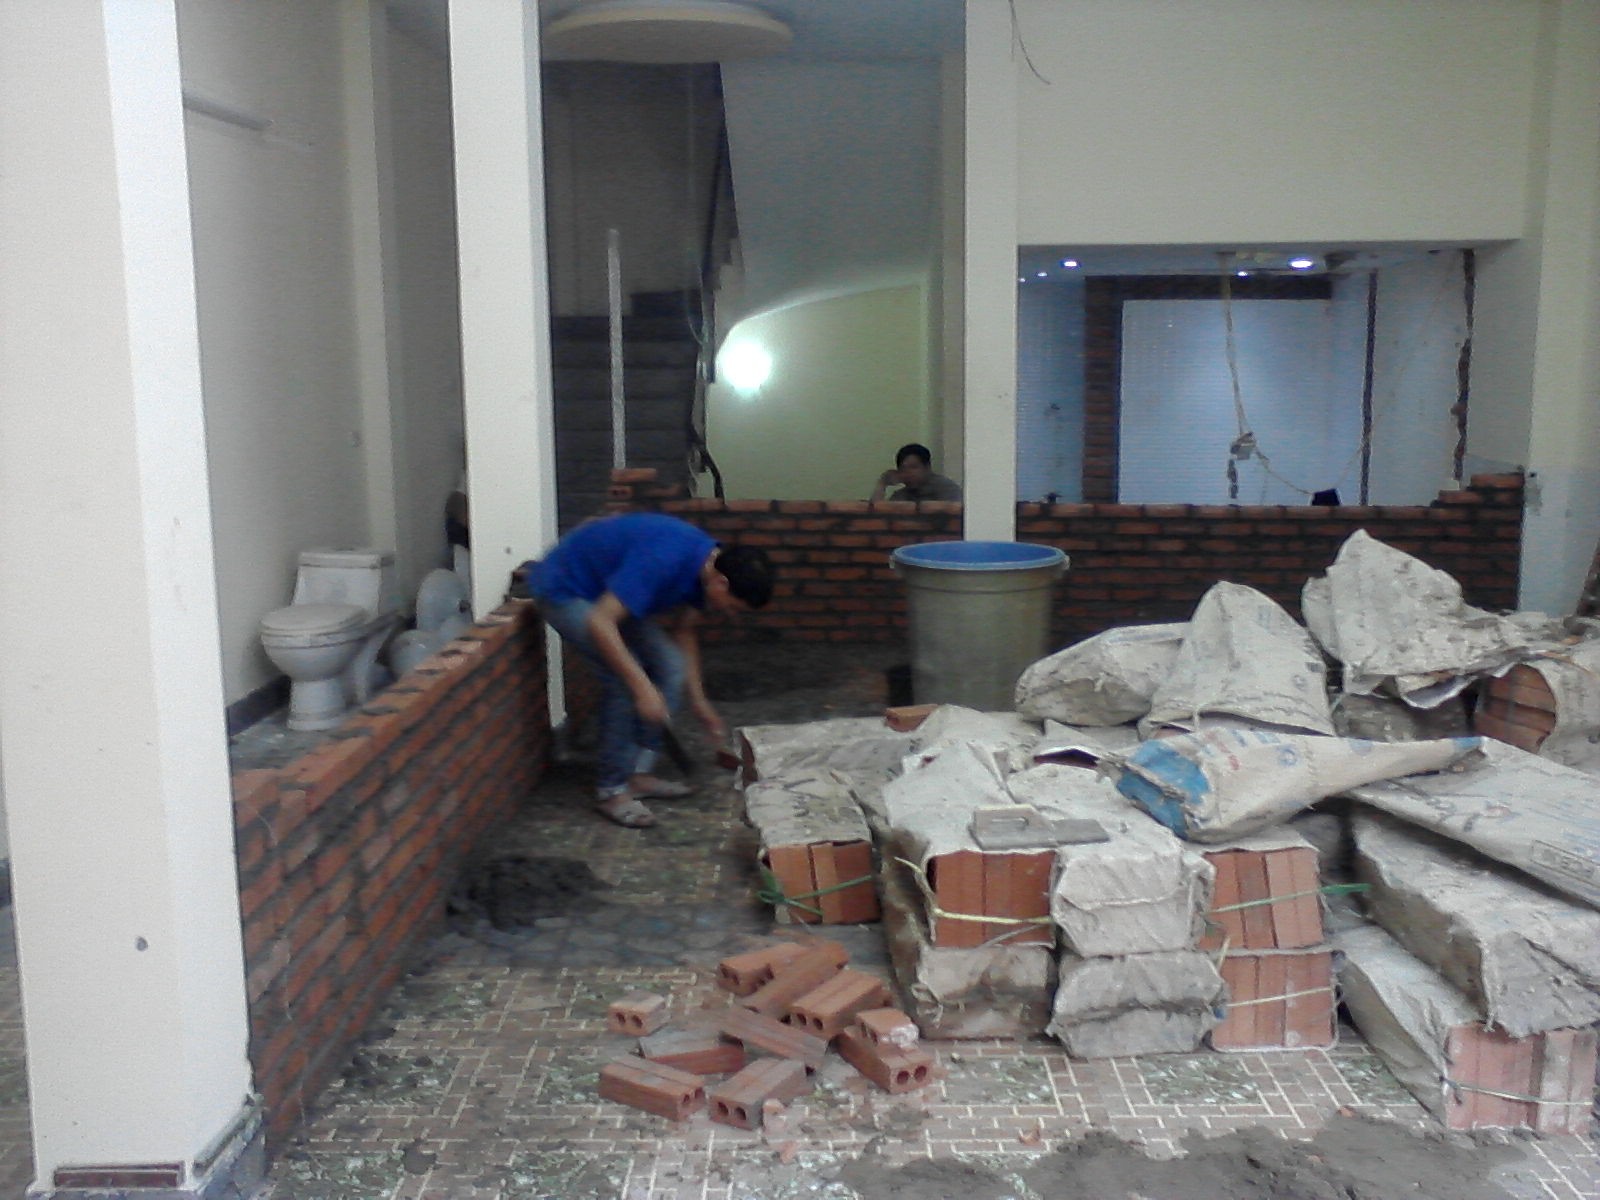 Xây dựng Nhật Minh chuyên cung cấp dịch vụ sửa chữa nhà theo yêu cầu